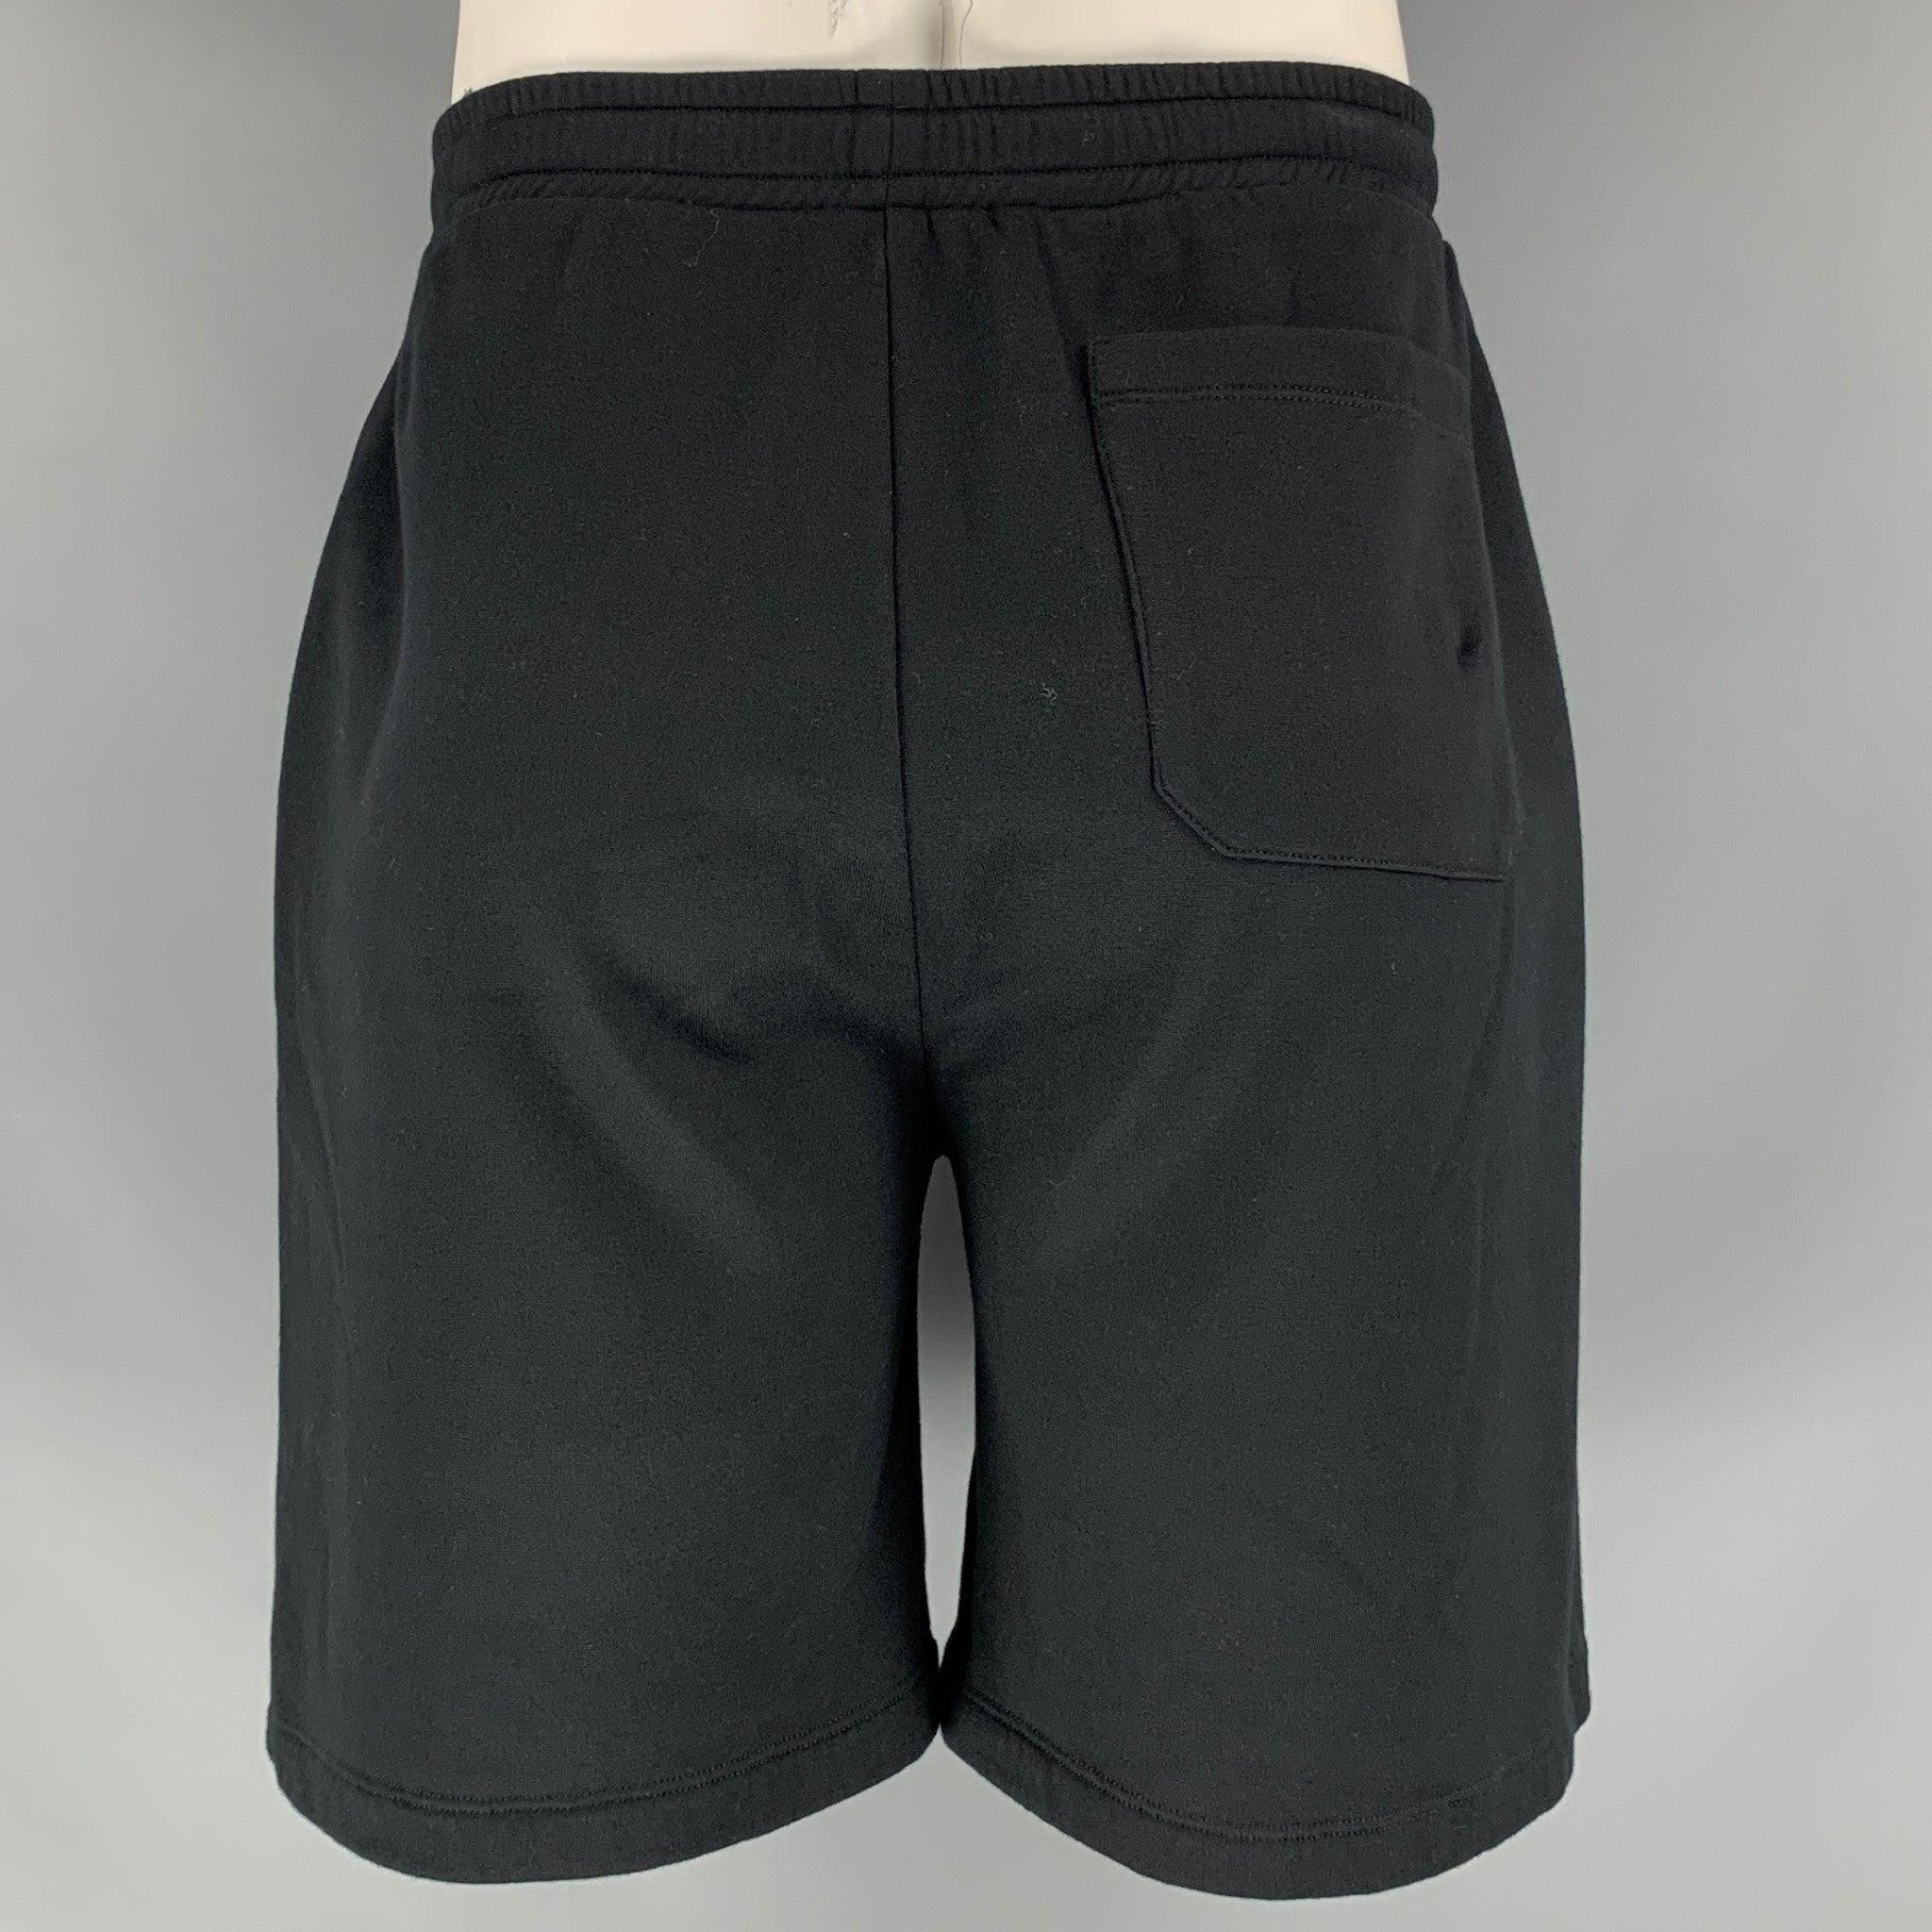 VALENTINO 'VLTN' Shorts aus einem Baumwoll-Polyamid MATERIAL mit Kordelzug und elastischem Bund. Made in Italy Ausgezeichneter Pre-Owned Zustand. 

Markiert:   M 

Abmessungen: 
  Taille: 33 Zoll Erhöhung: 16 Zoll Innennaht: 7,5 Zoll 
  
  
